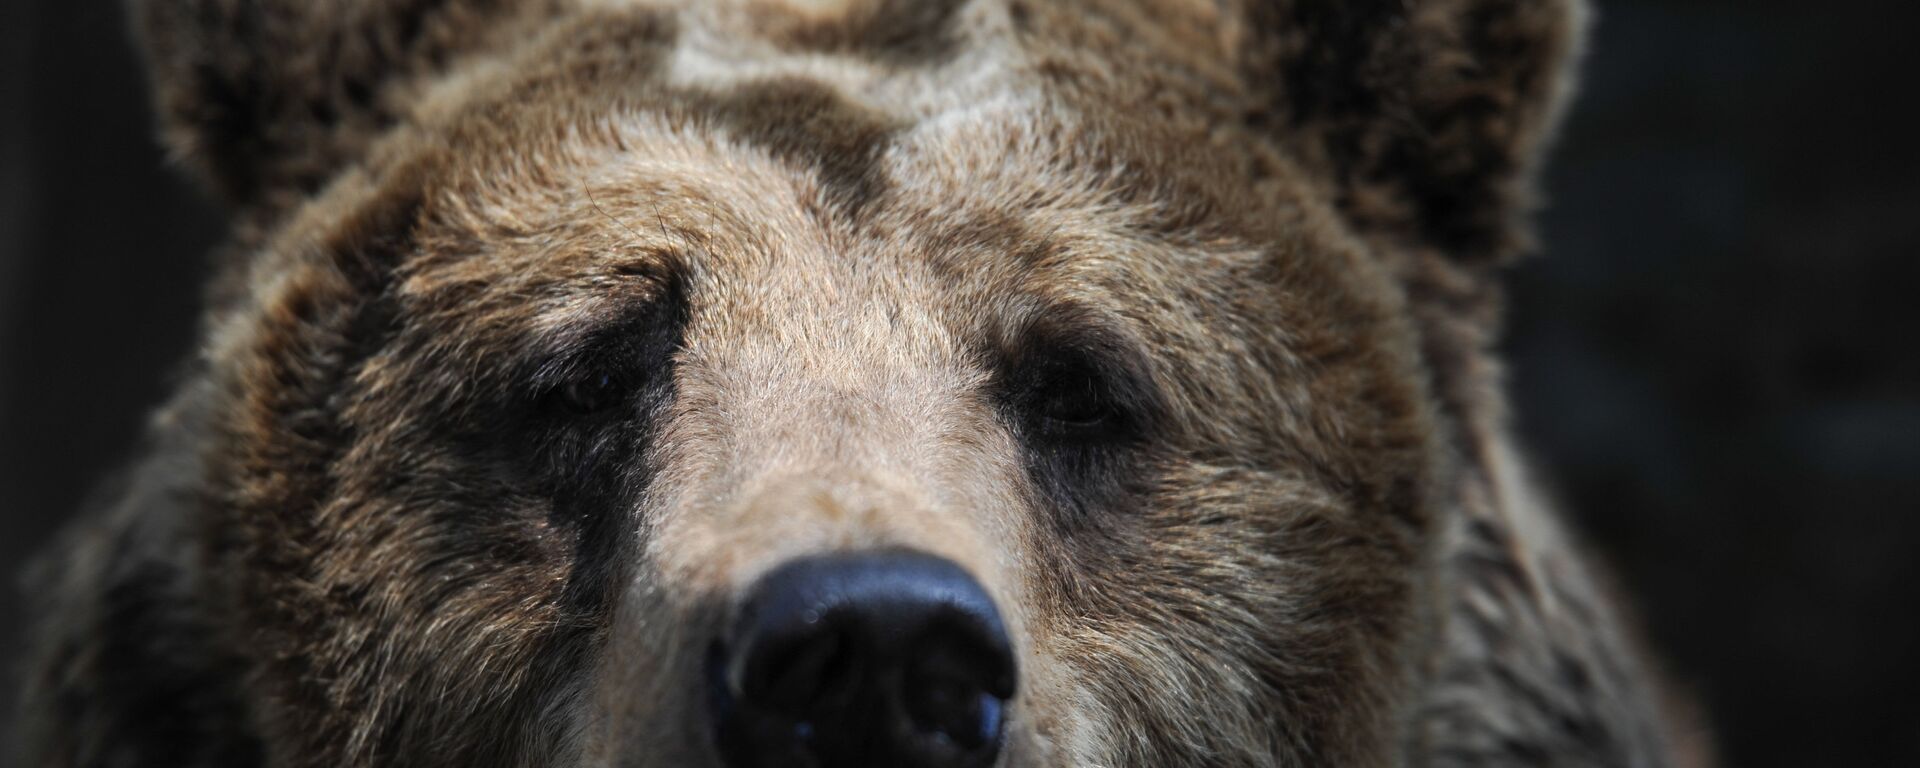 Бурый медведь в зоопарке Калининграда. - Sputnik Латвия, 1920, 21.06.2019